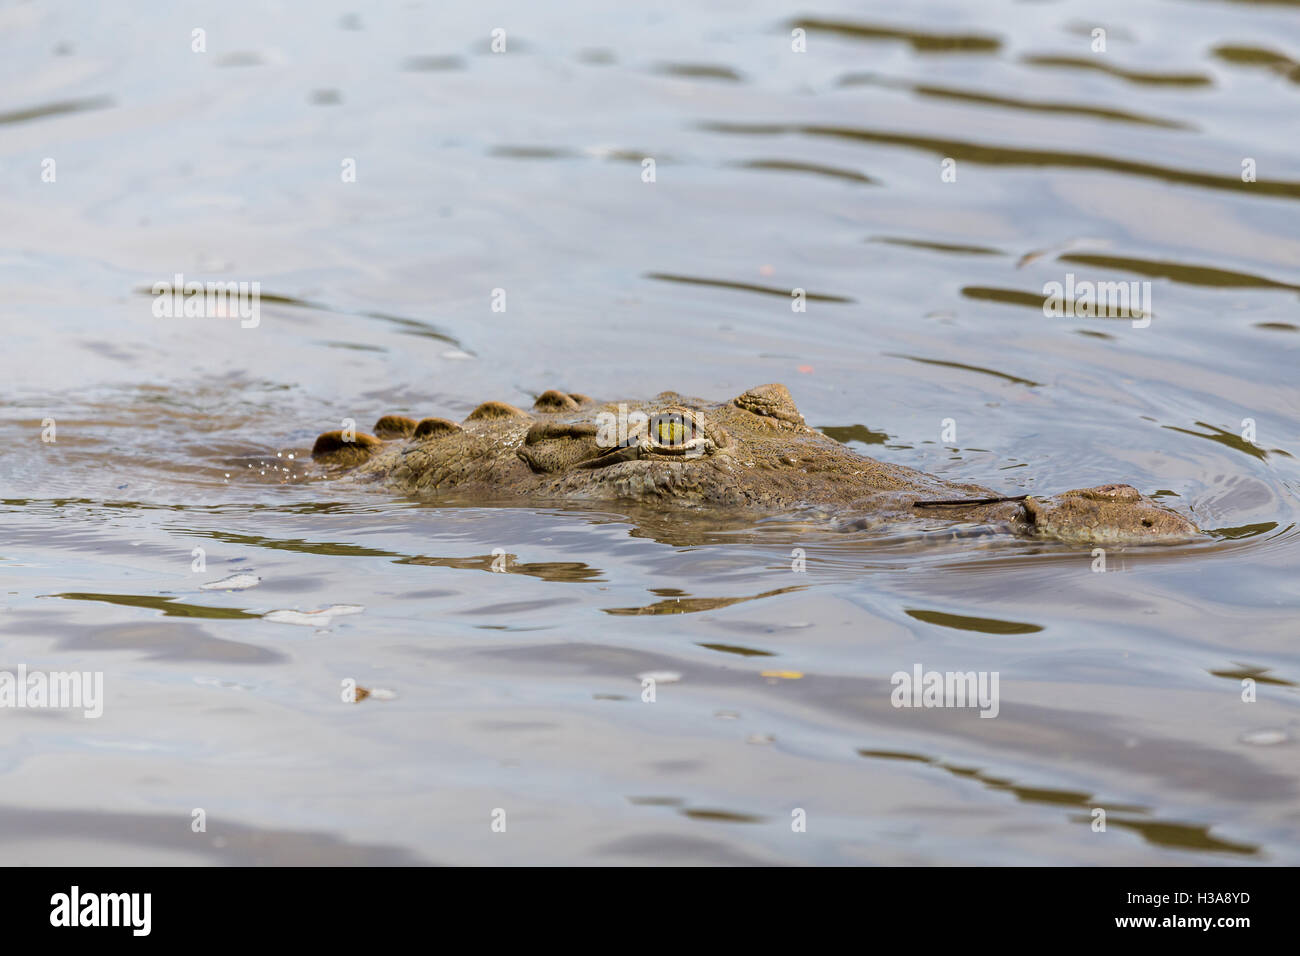 Ein amerikanisches Krokodil lauert in Rio Tempisque, Teil des Palo Verde Nationalpark in Costa Rica. Stockfoto